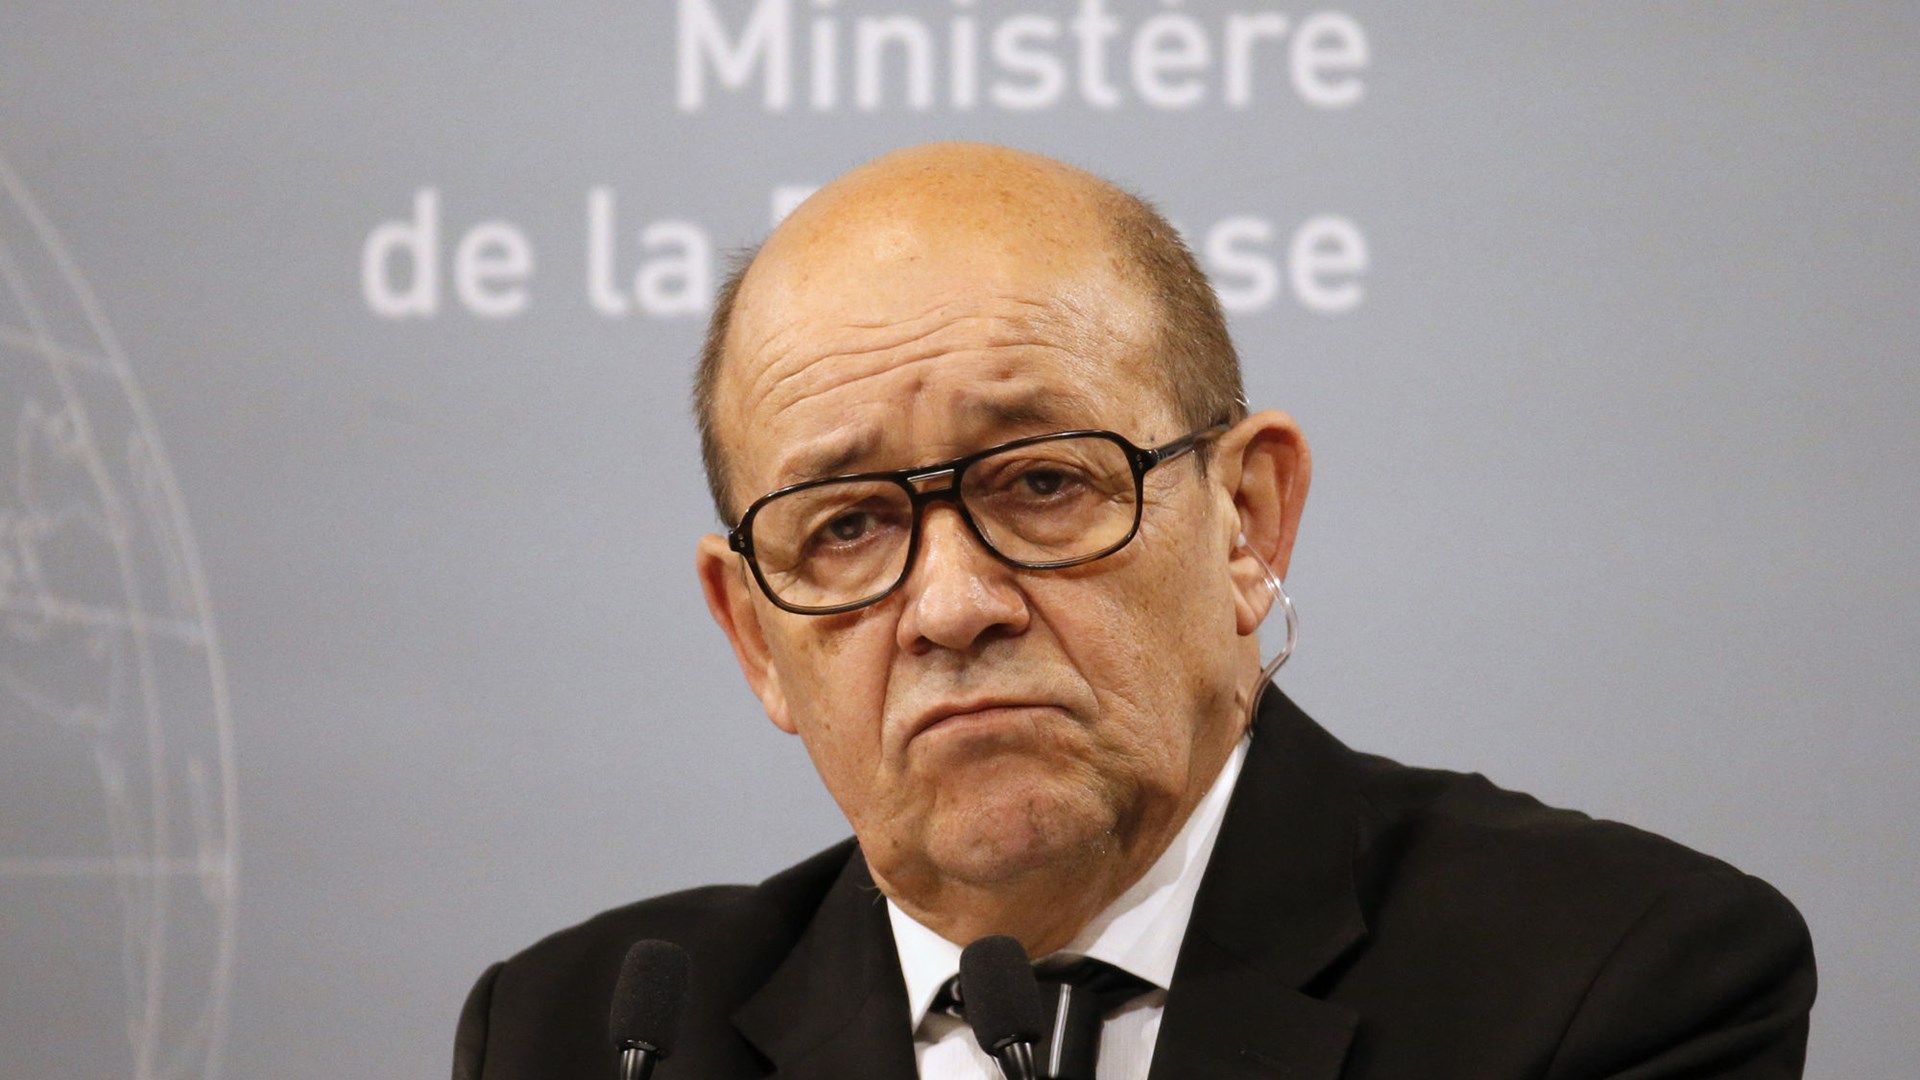 Η Γαλλία υπόσχεται να βοηθήσει στην ανοικοδόμηση του Ιράκ όταν ηττηθεί το ISIS